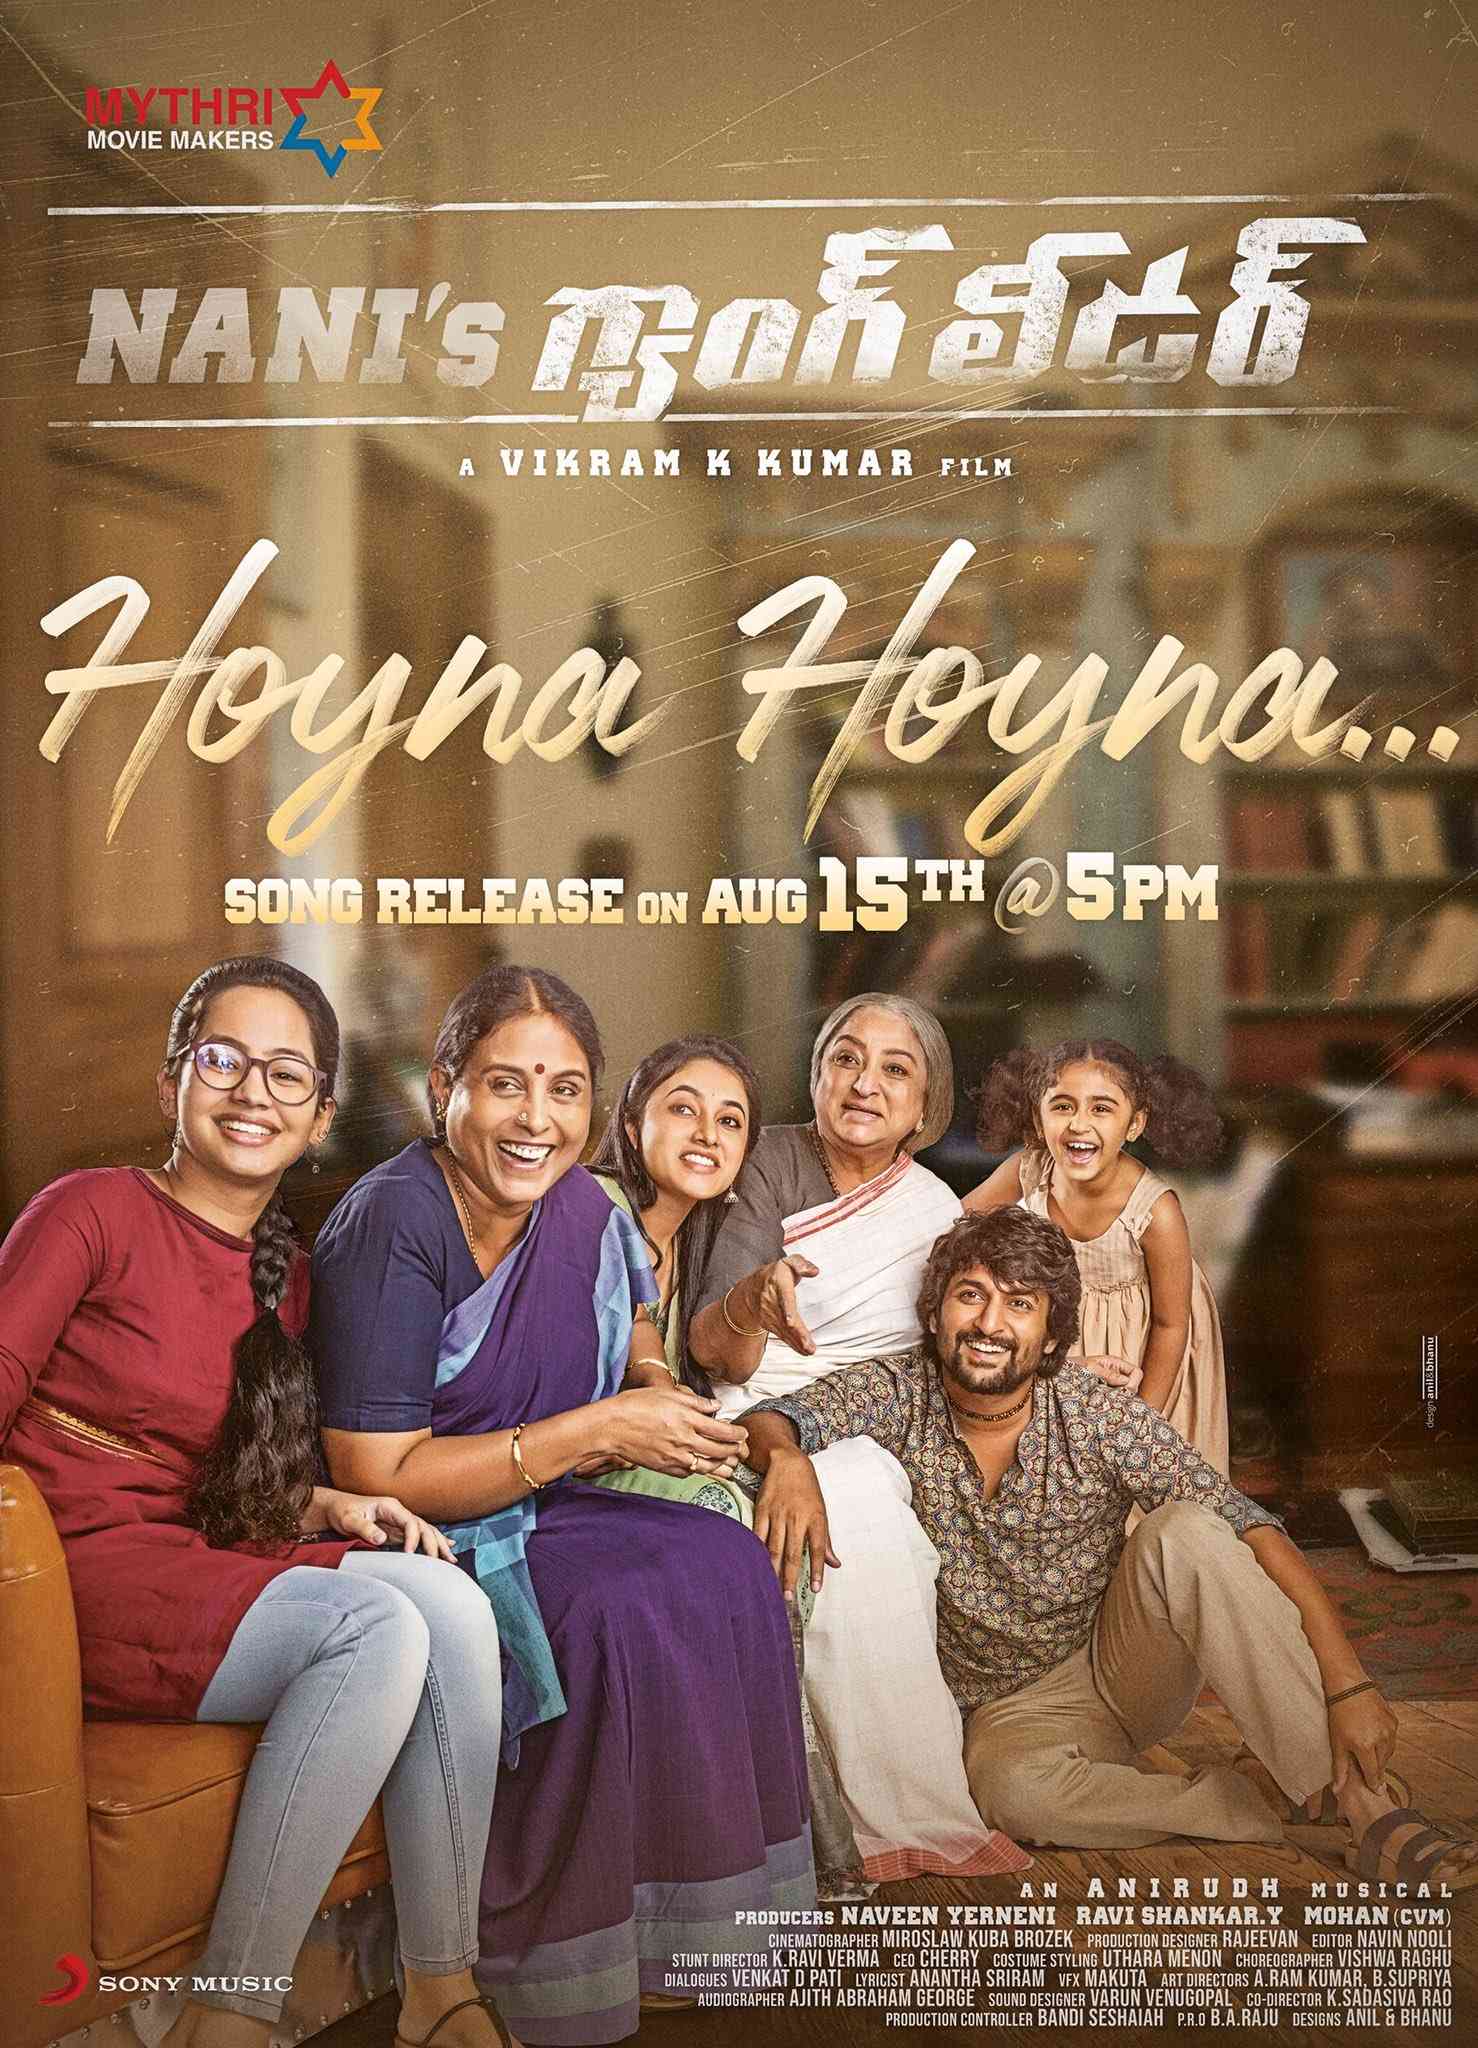 Nani Gangleader Hoyna Song Release on Aug 15